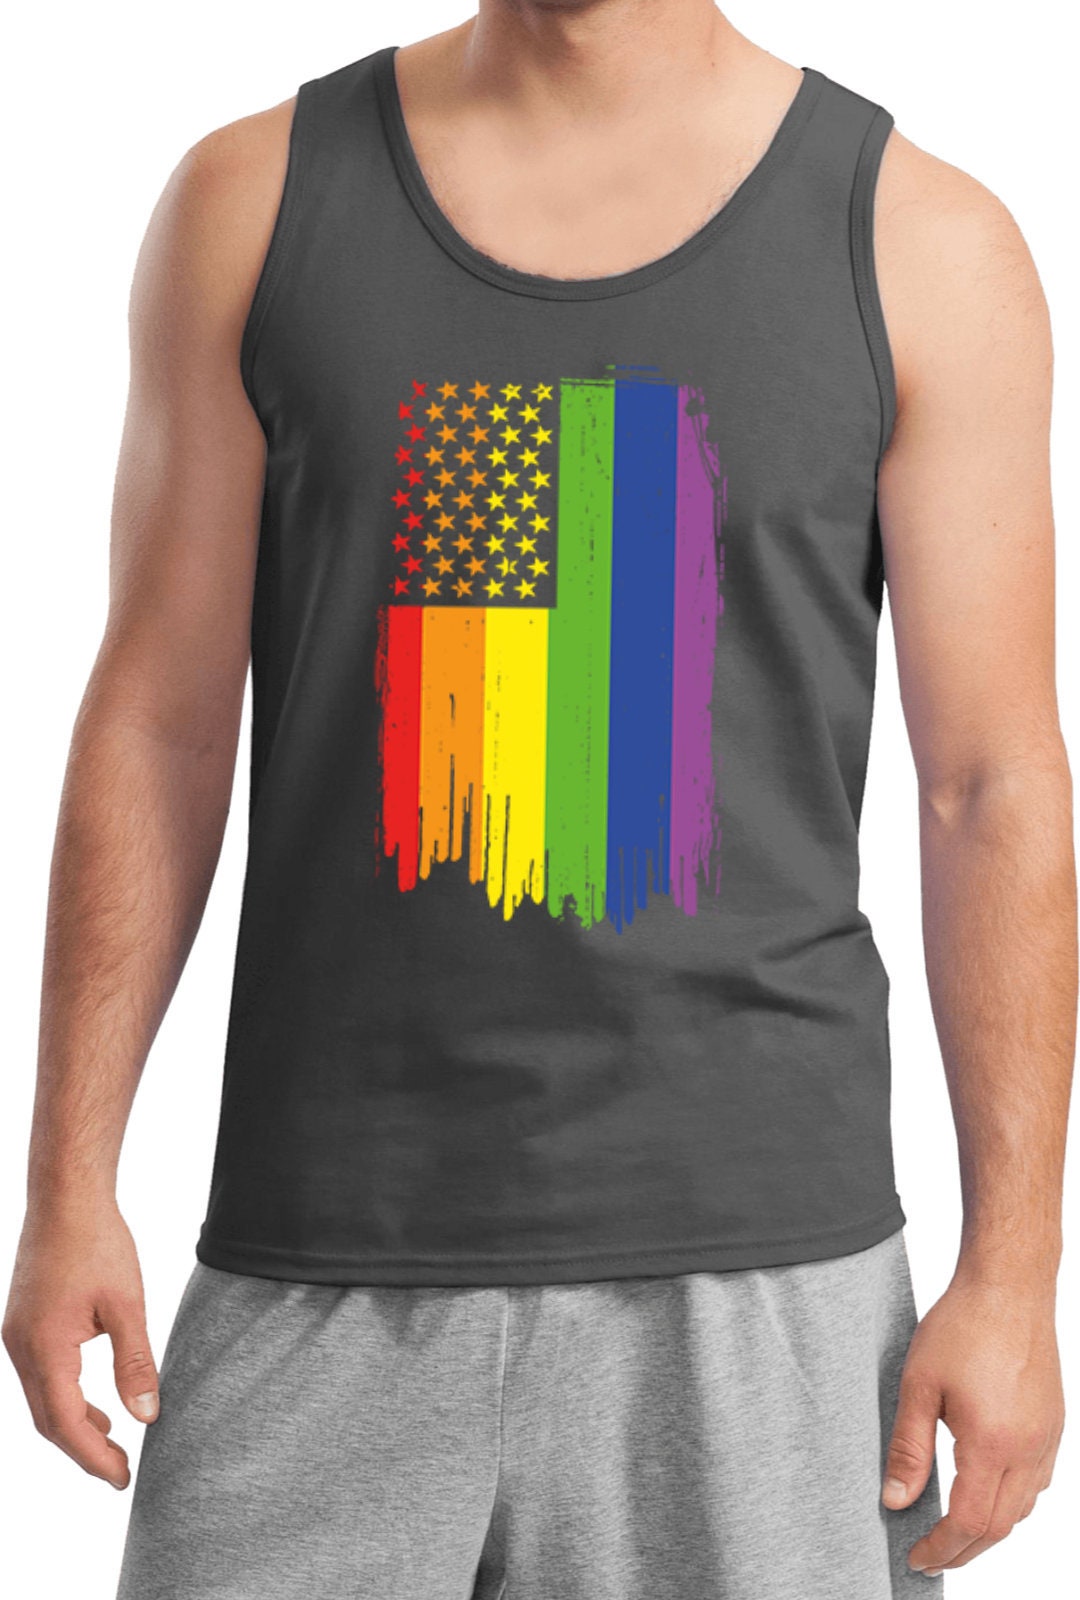 Gay Pride Flag Men's Tank Top WS-19239-2200 - Etsy